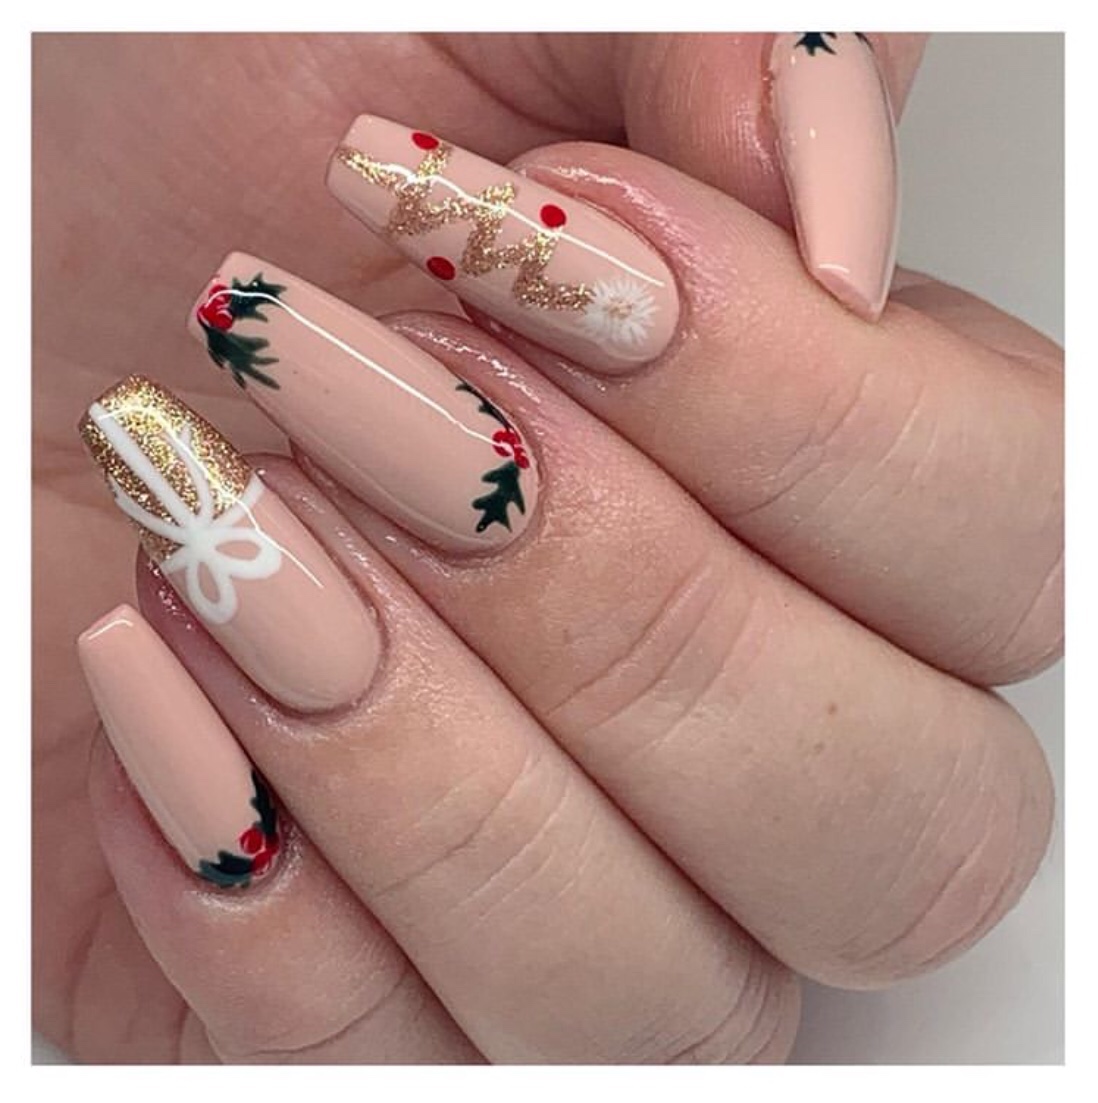 2019 Christmas nails